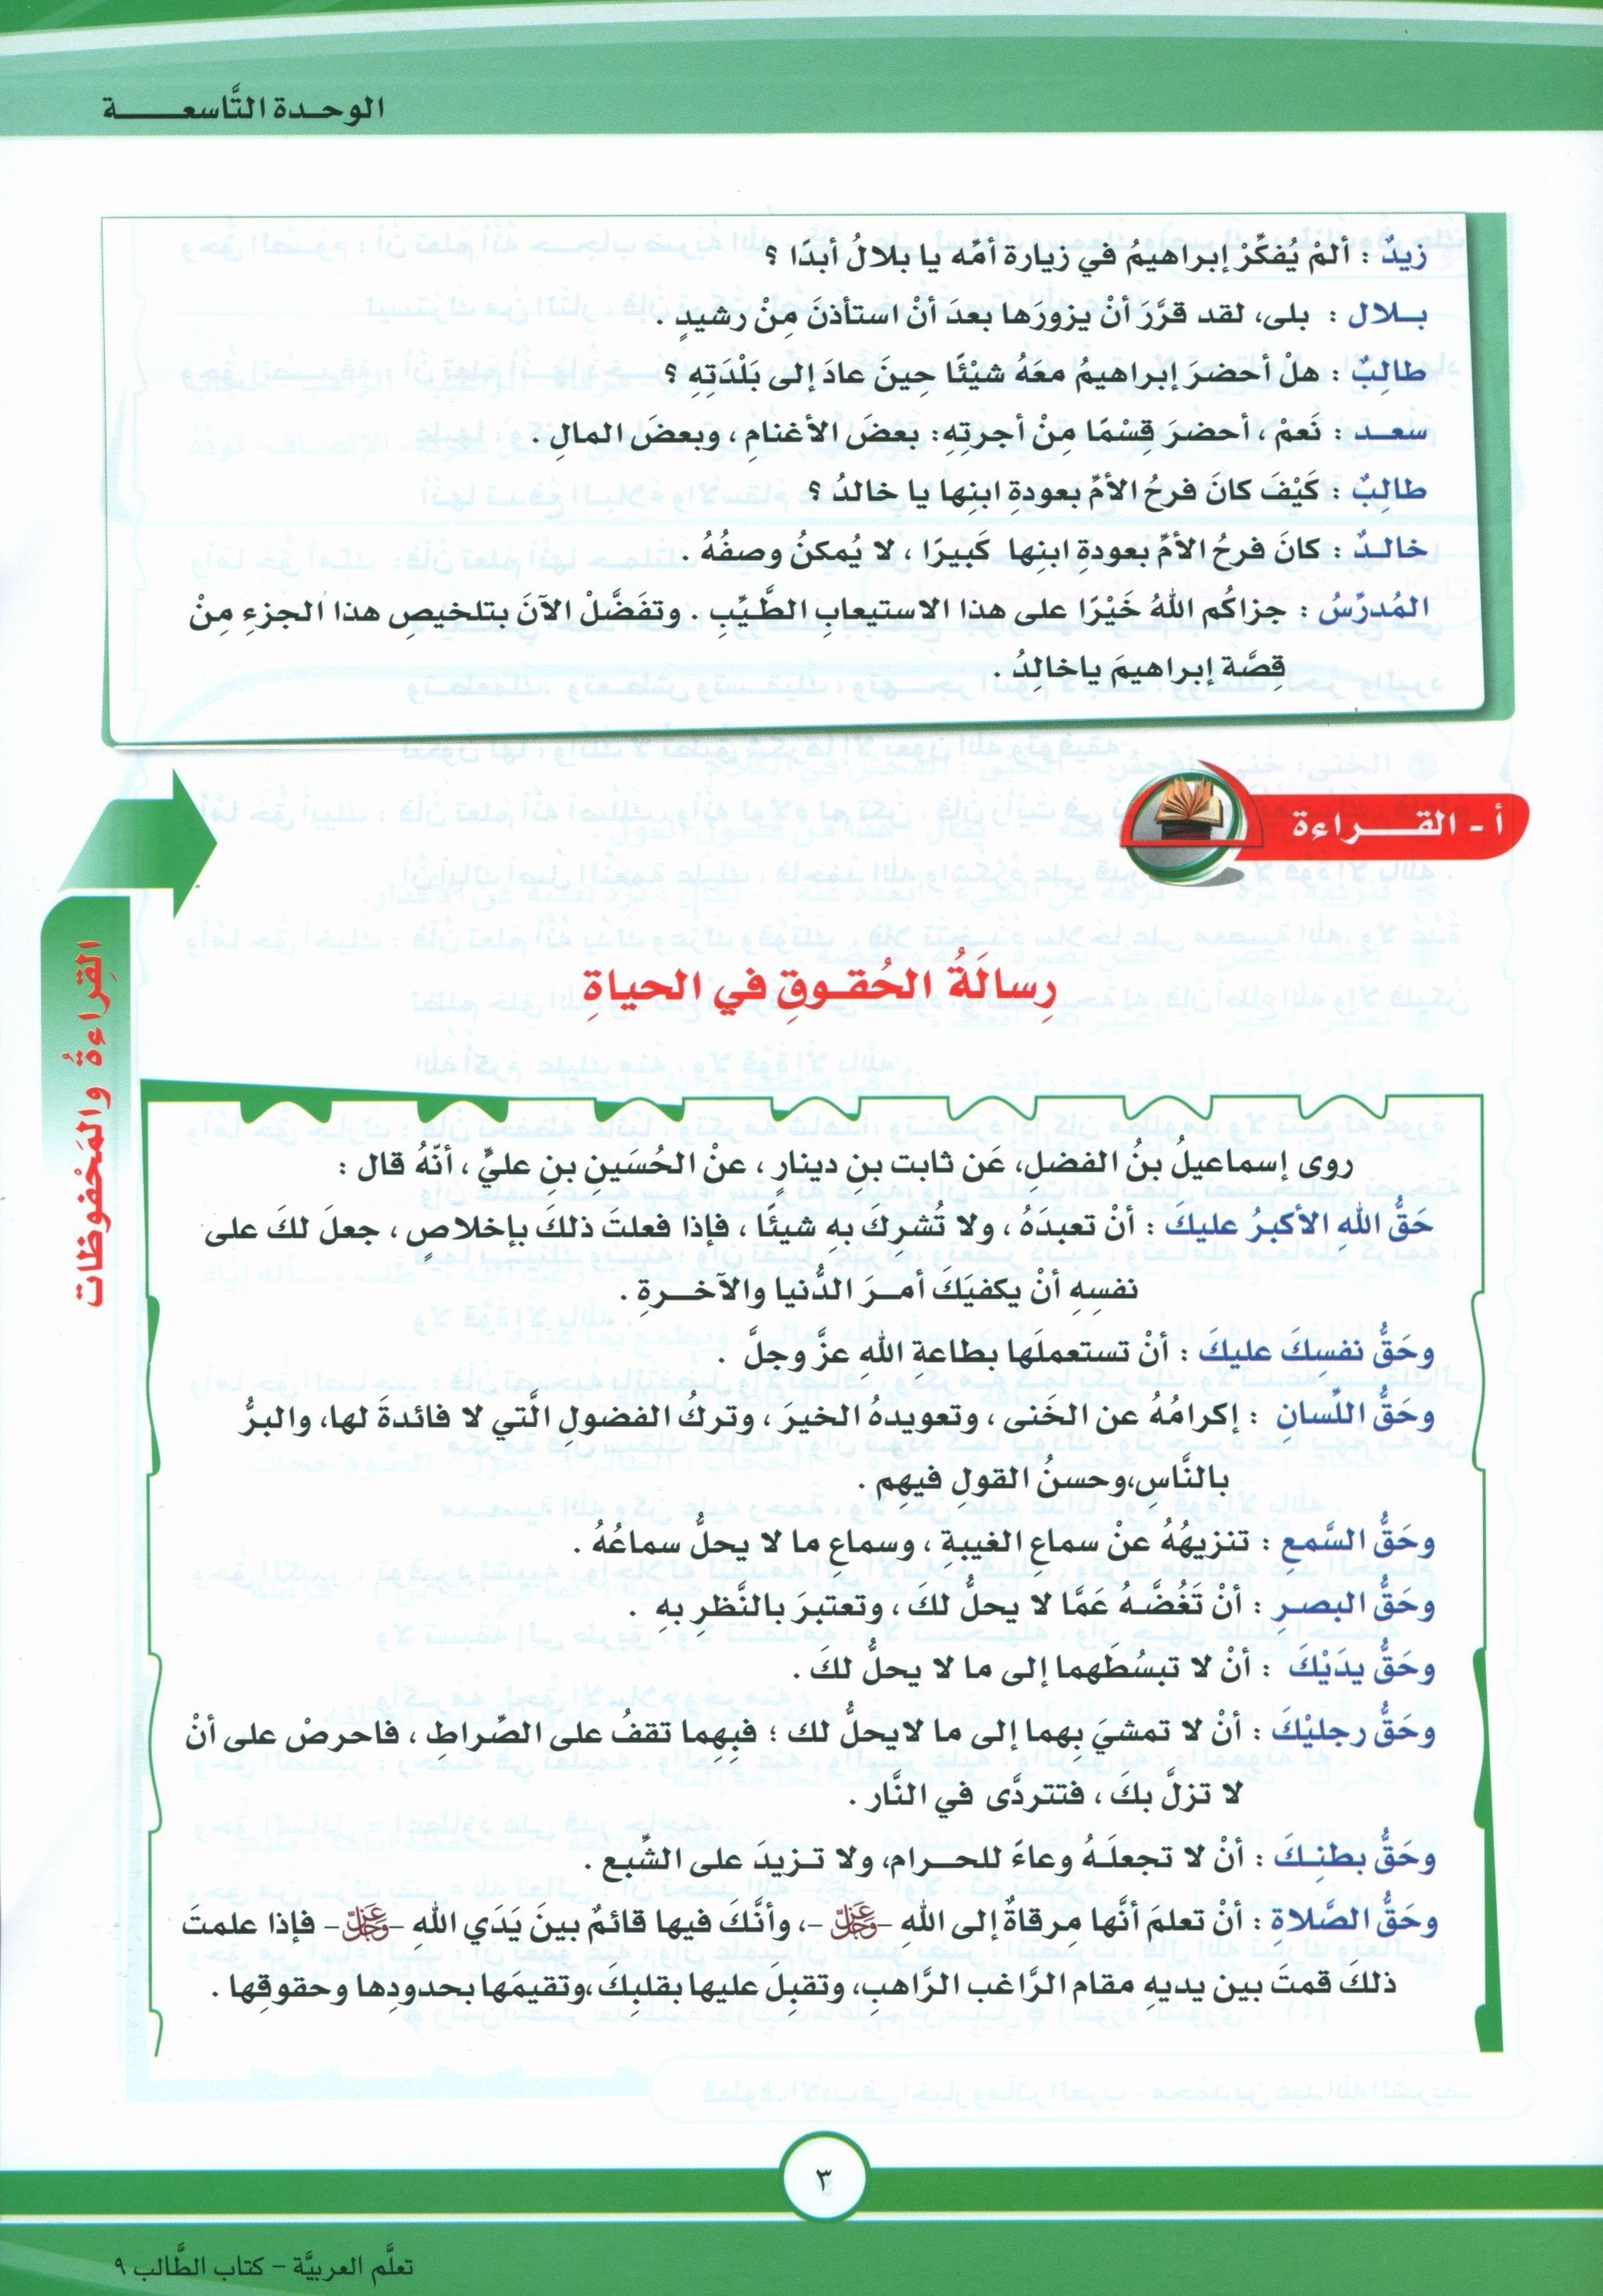 ICO Learn Arabic Textbook Level 9 Part 2 تعلم العربية كتاب التلميذ